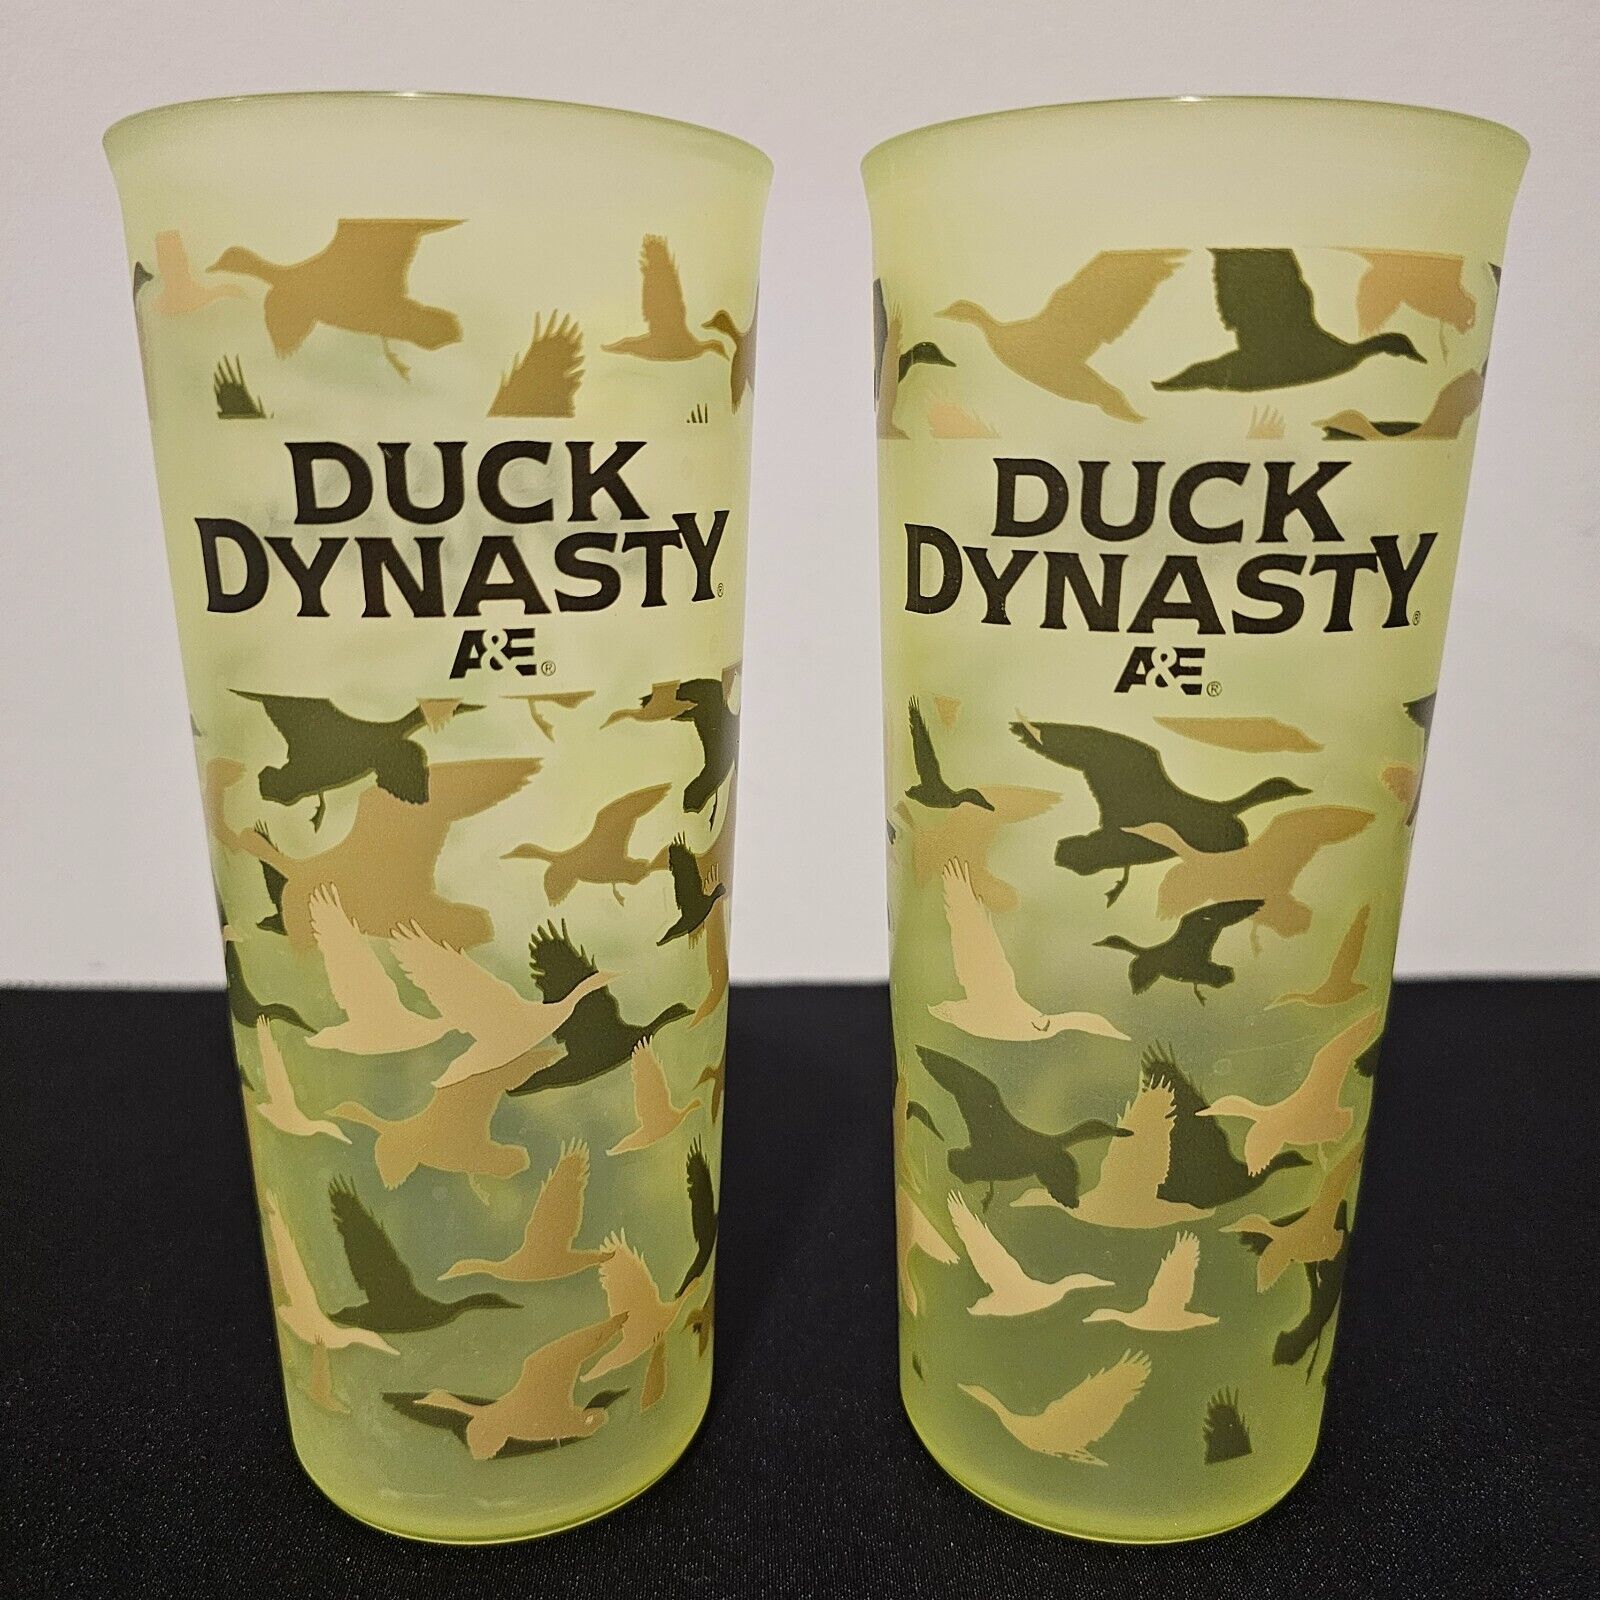 2013 Duck Dynasty A&E Green Redneck Tumbler 16 oz Uncle Si Tea Cups Camo (2)